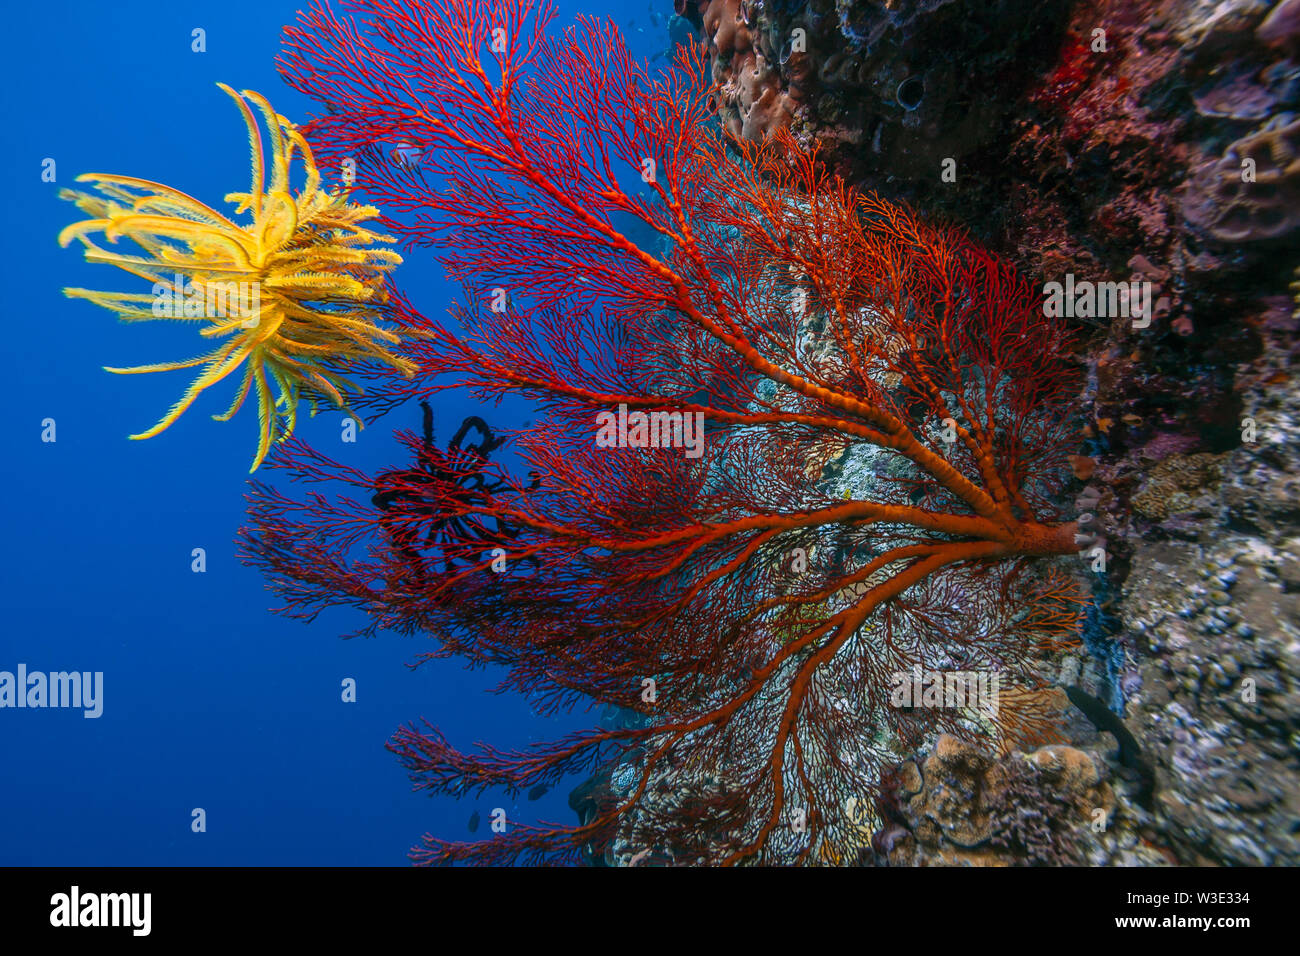 Dans les récifs coralliens du Pacifique Sud avec des crinoïdes jaunes Banque D'Images